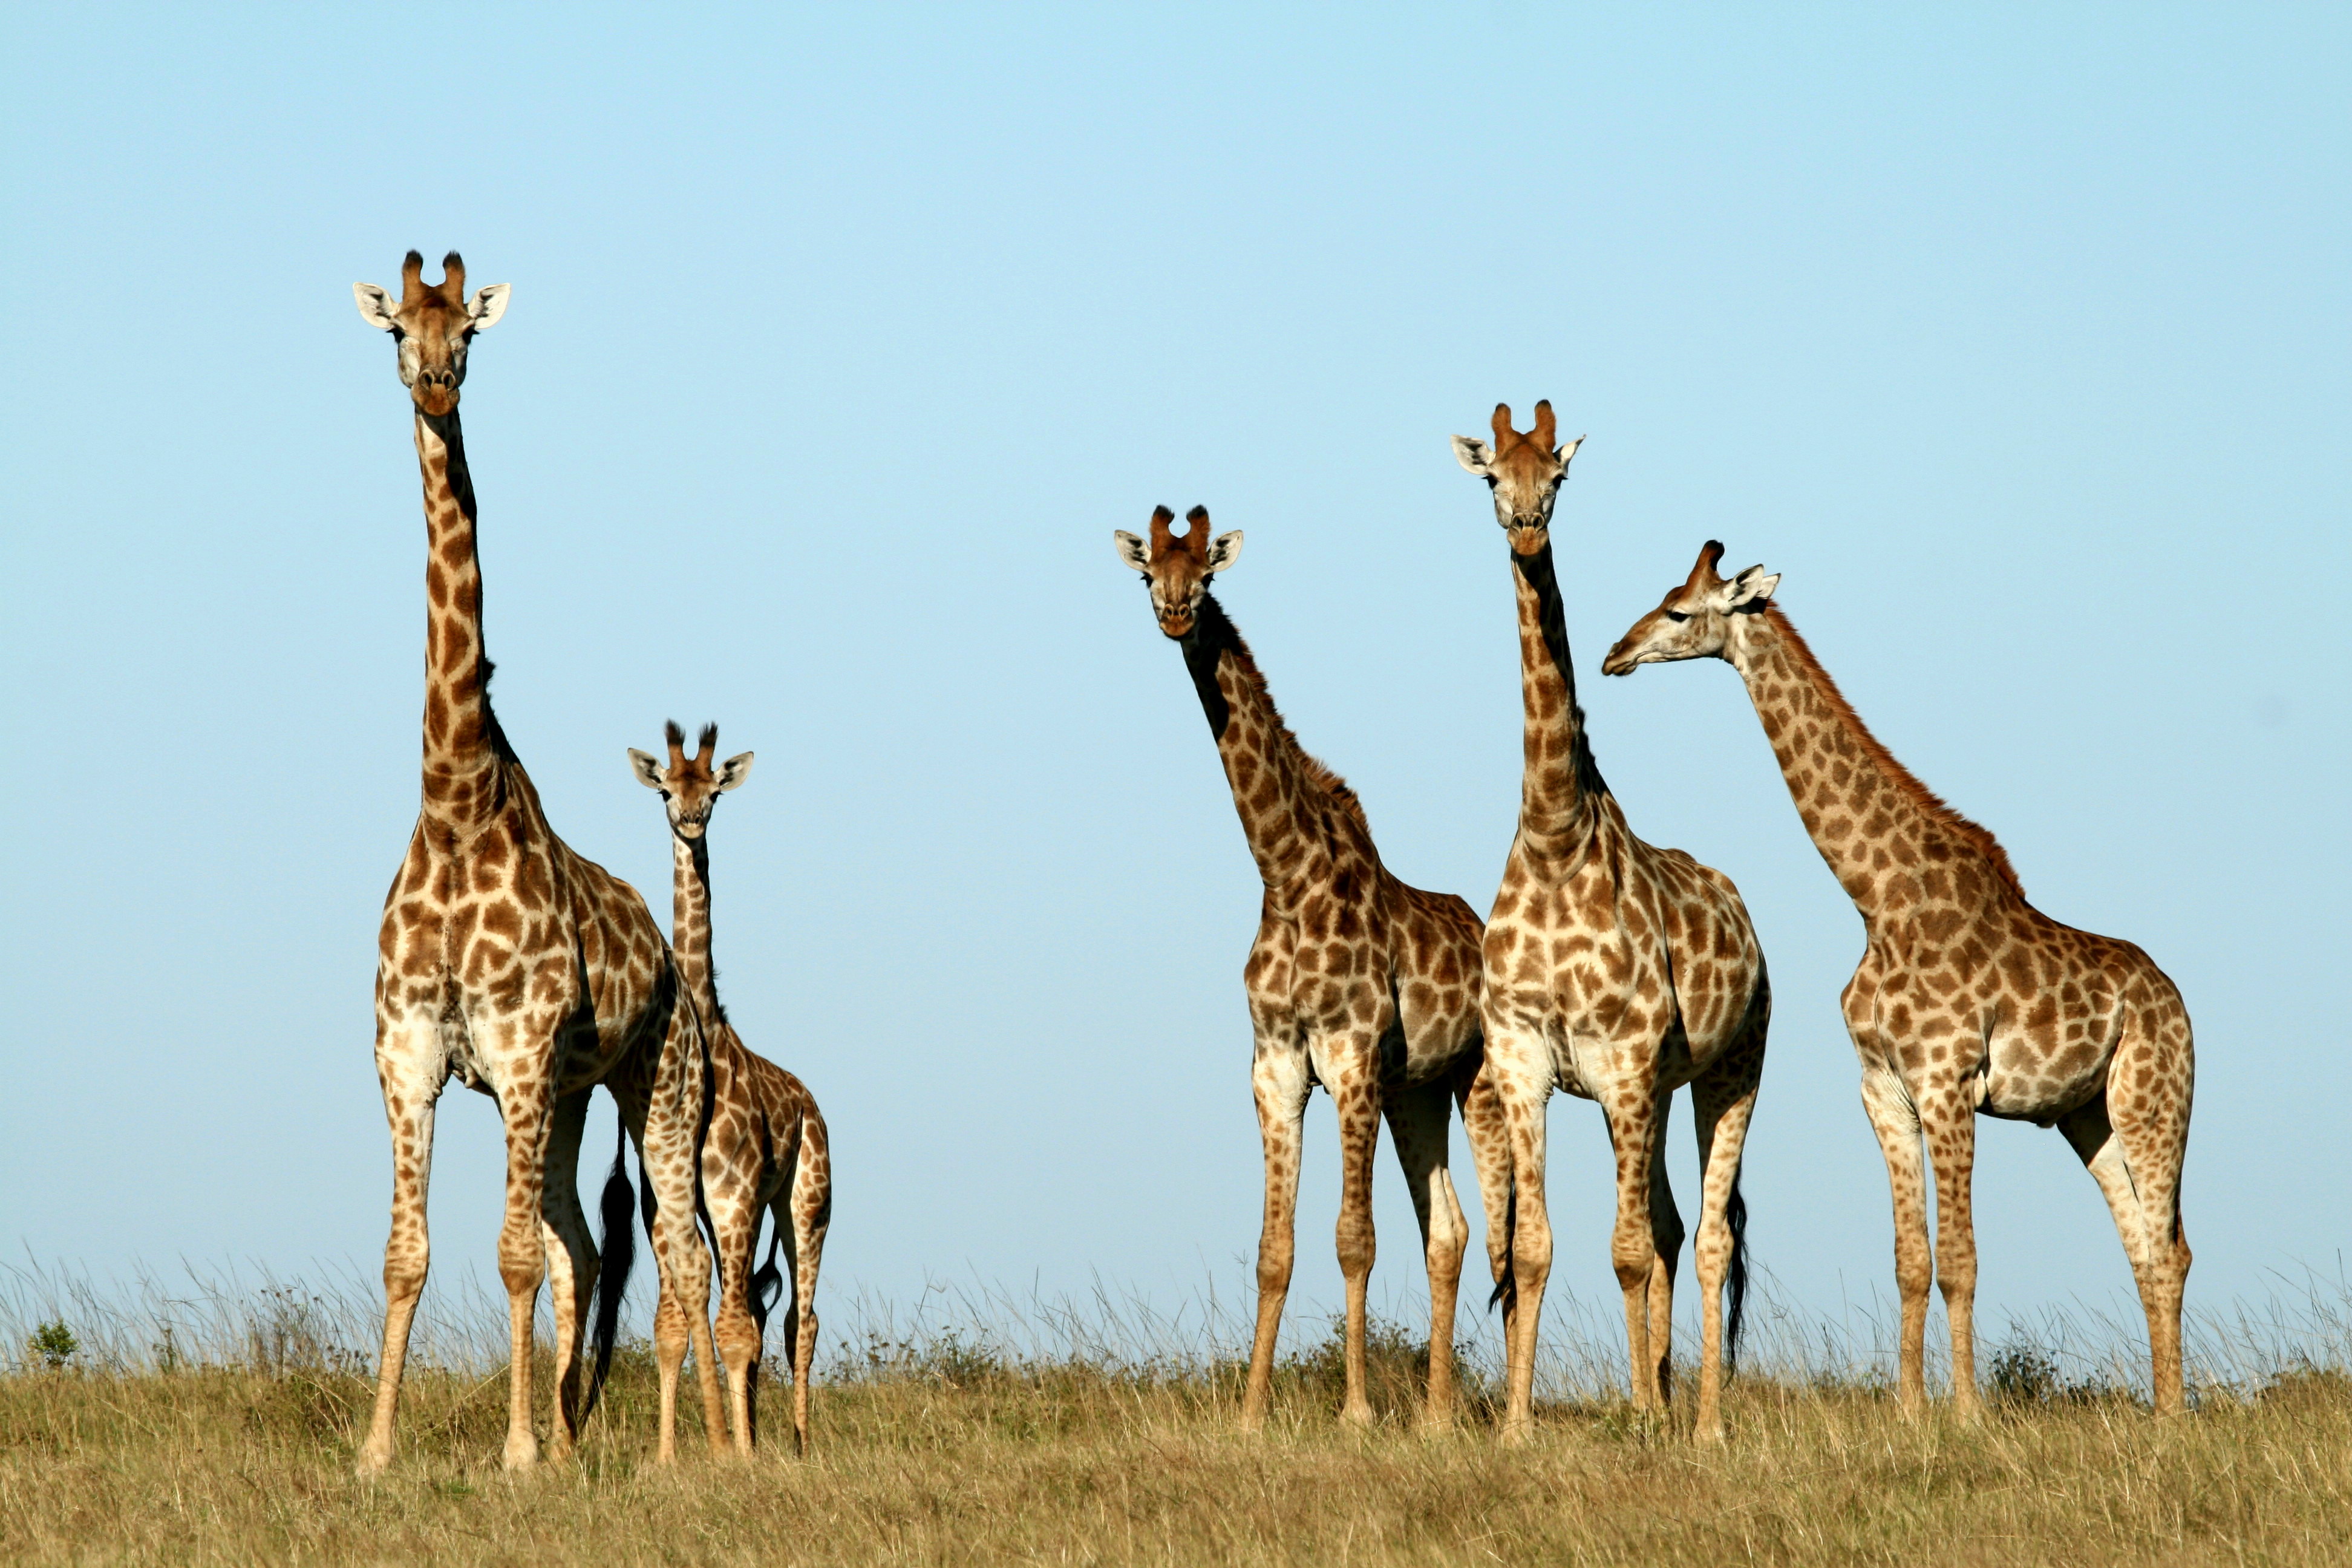 Giraffe at Kariega Game Reserve